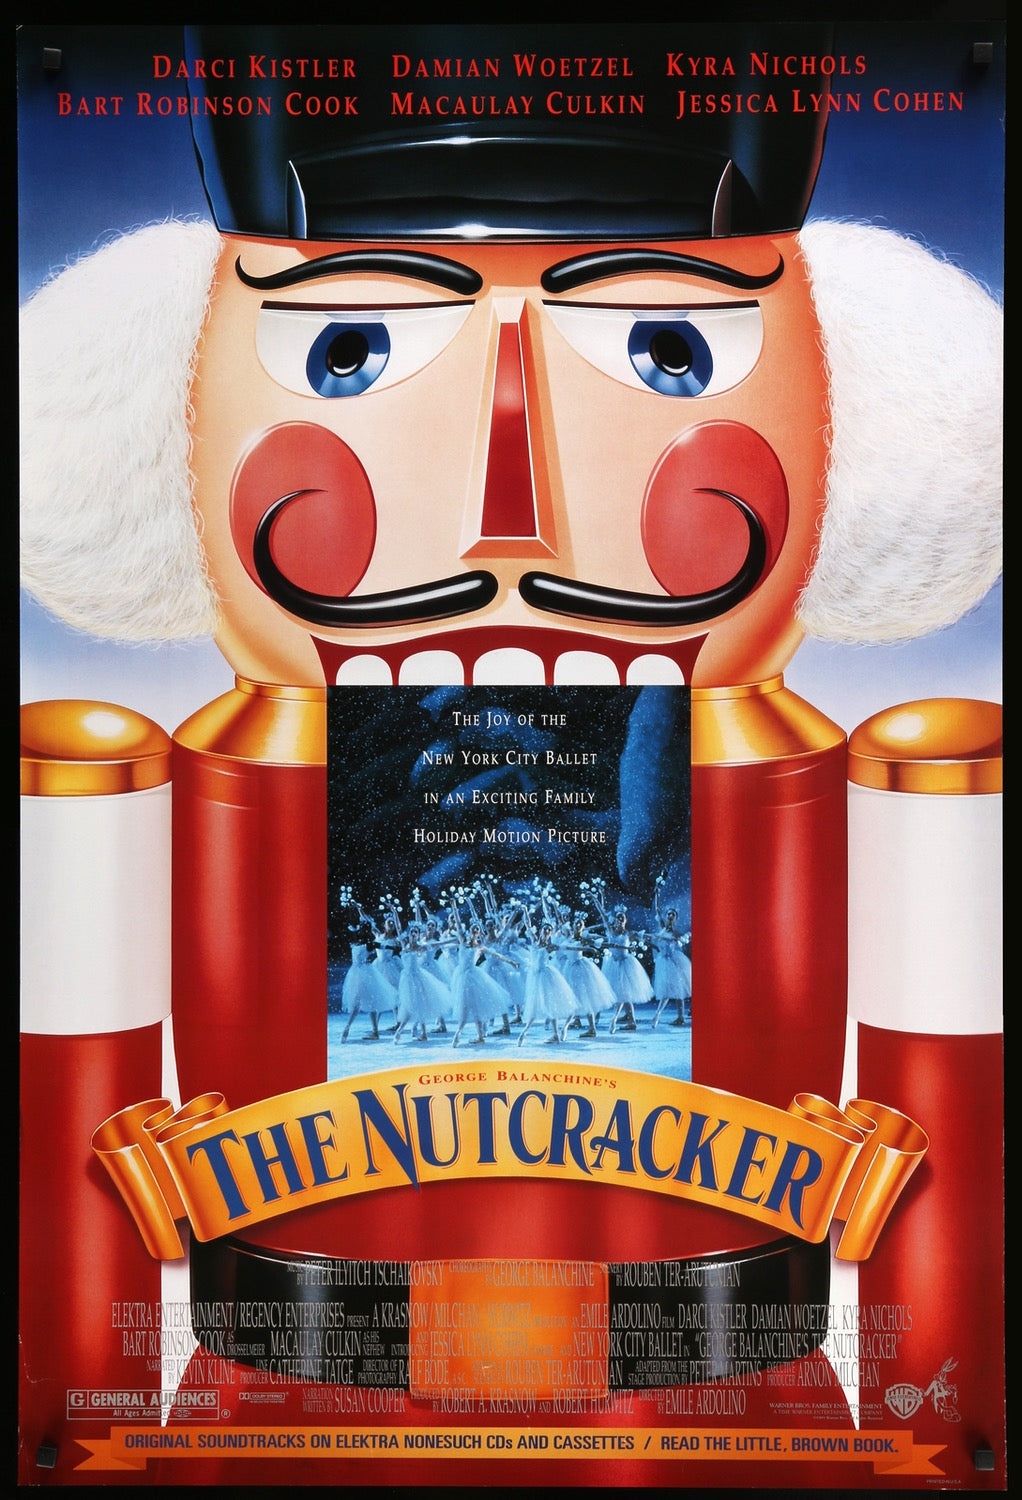 Nutcracker (1993) original movie poster for sale at Original Film Art